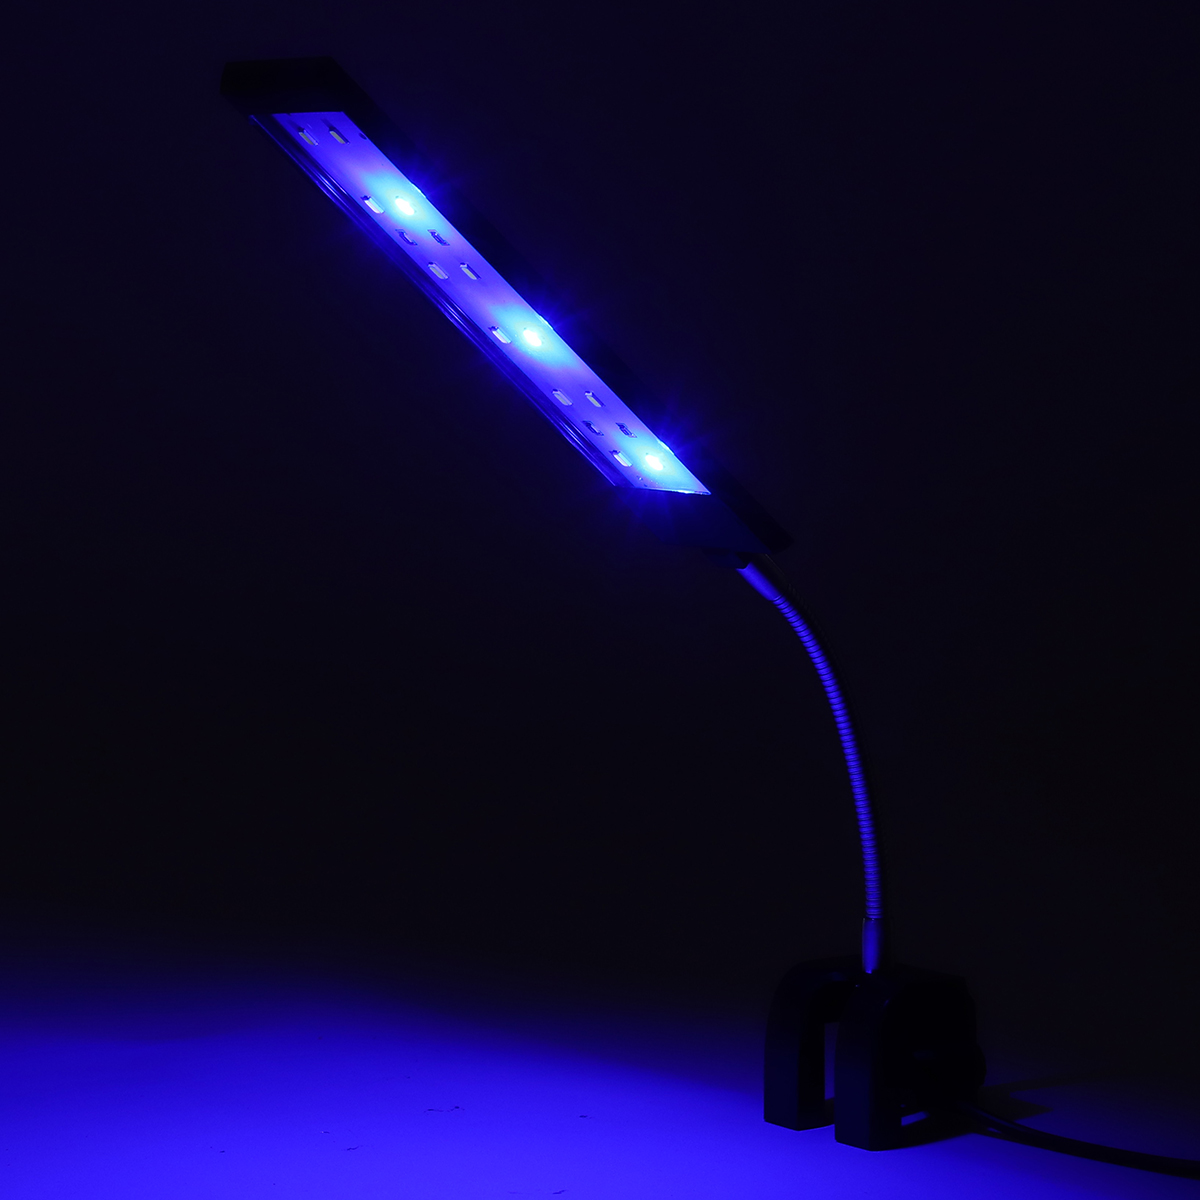 100-240V-7W-Clip-on-LED-Aquarium-Light-Fish-Tank-Decoration-Lighting-Lamp-with-White--Blue-LEDs-Touc-1640560-6